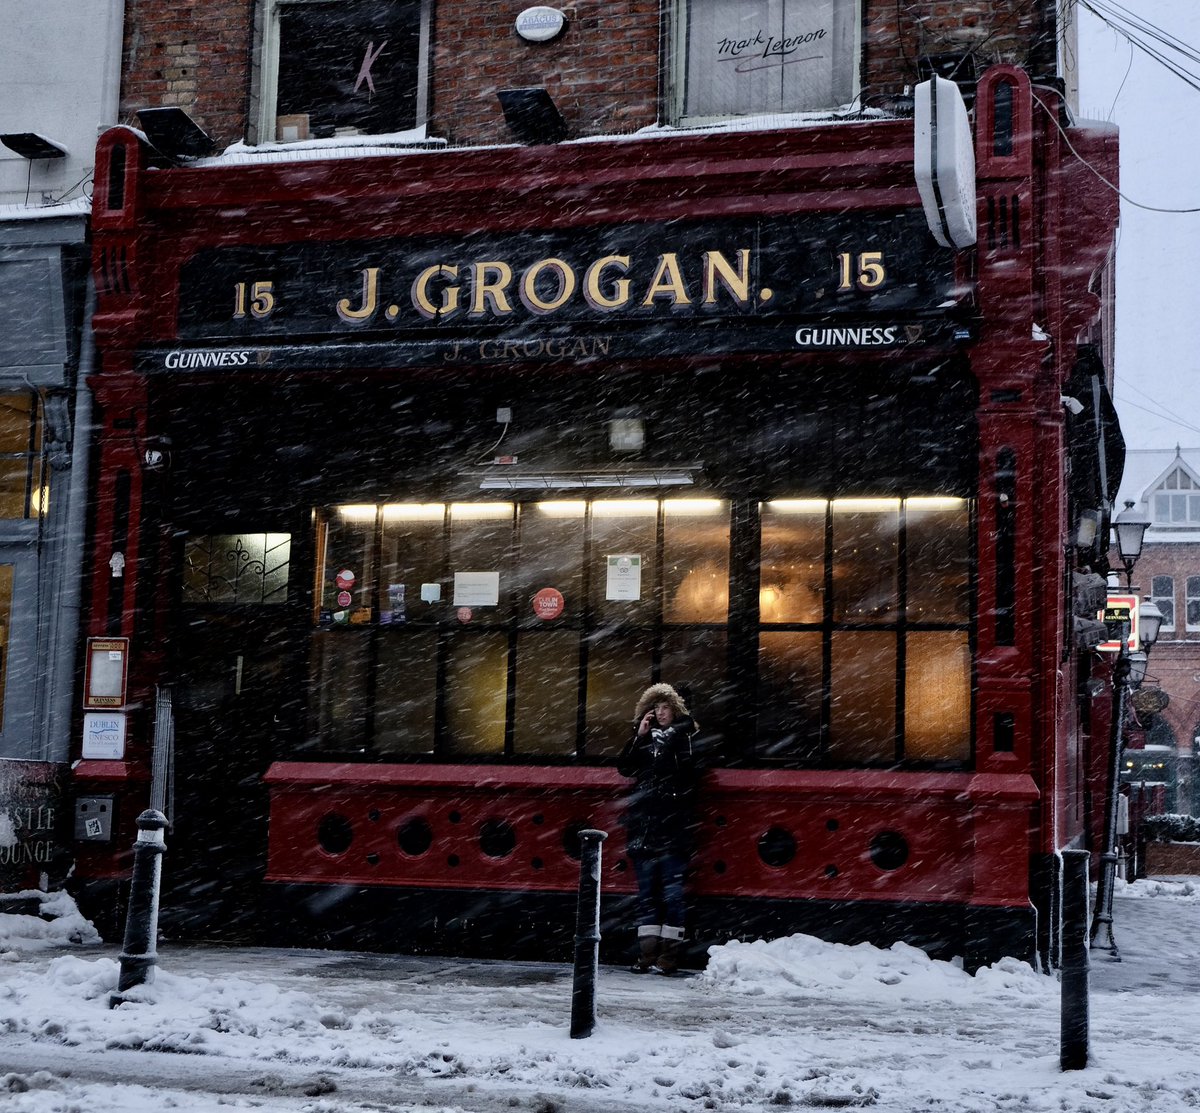 Dublin March 2018. ❄️🍺🥪 @GrogansPub #dublin #beastfromthesast #winter #WinterIsComing